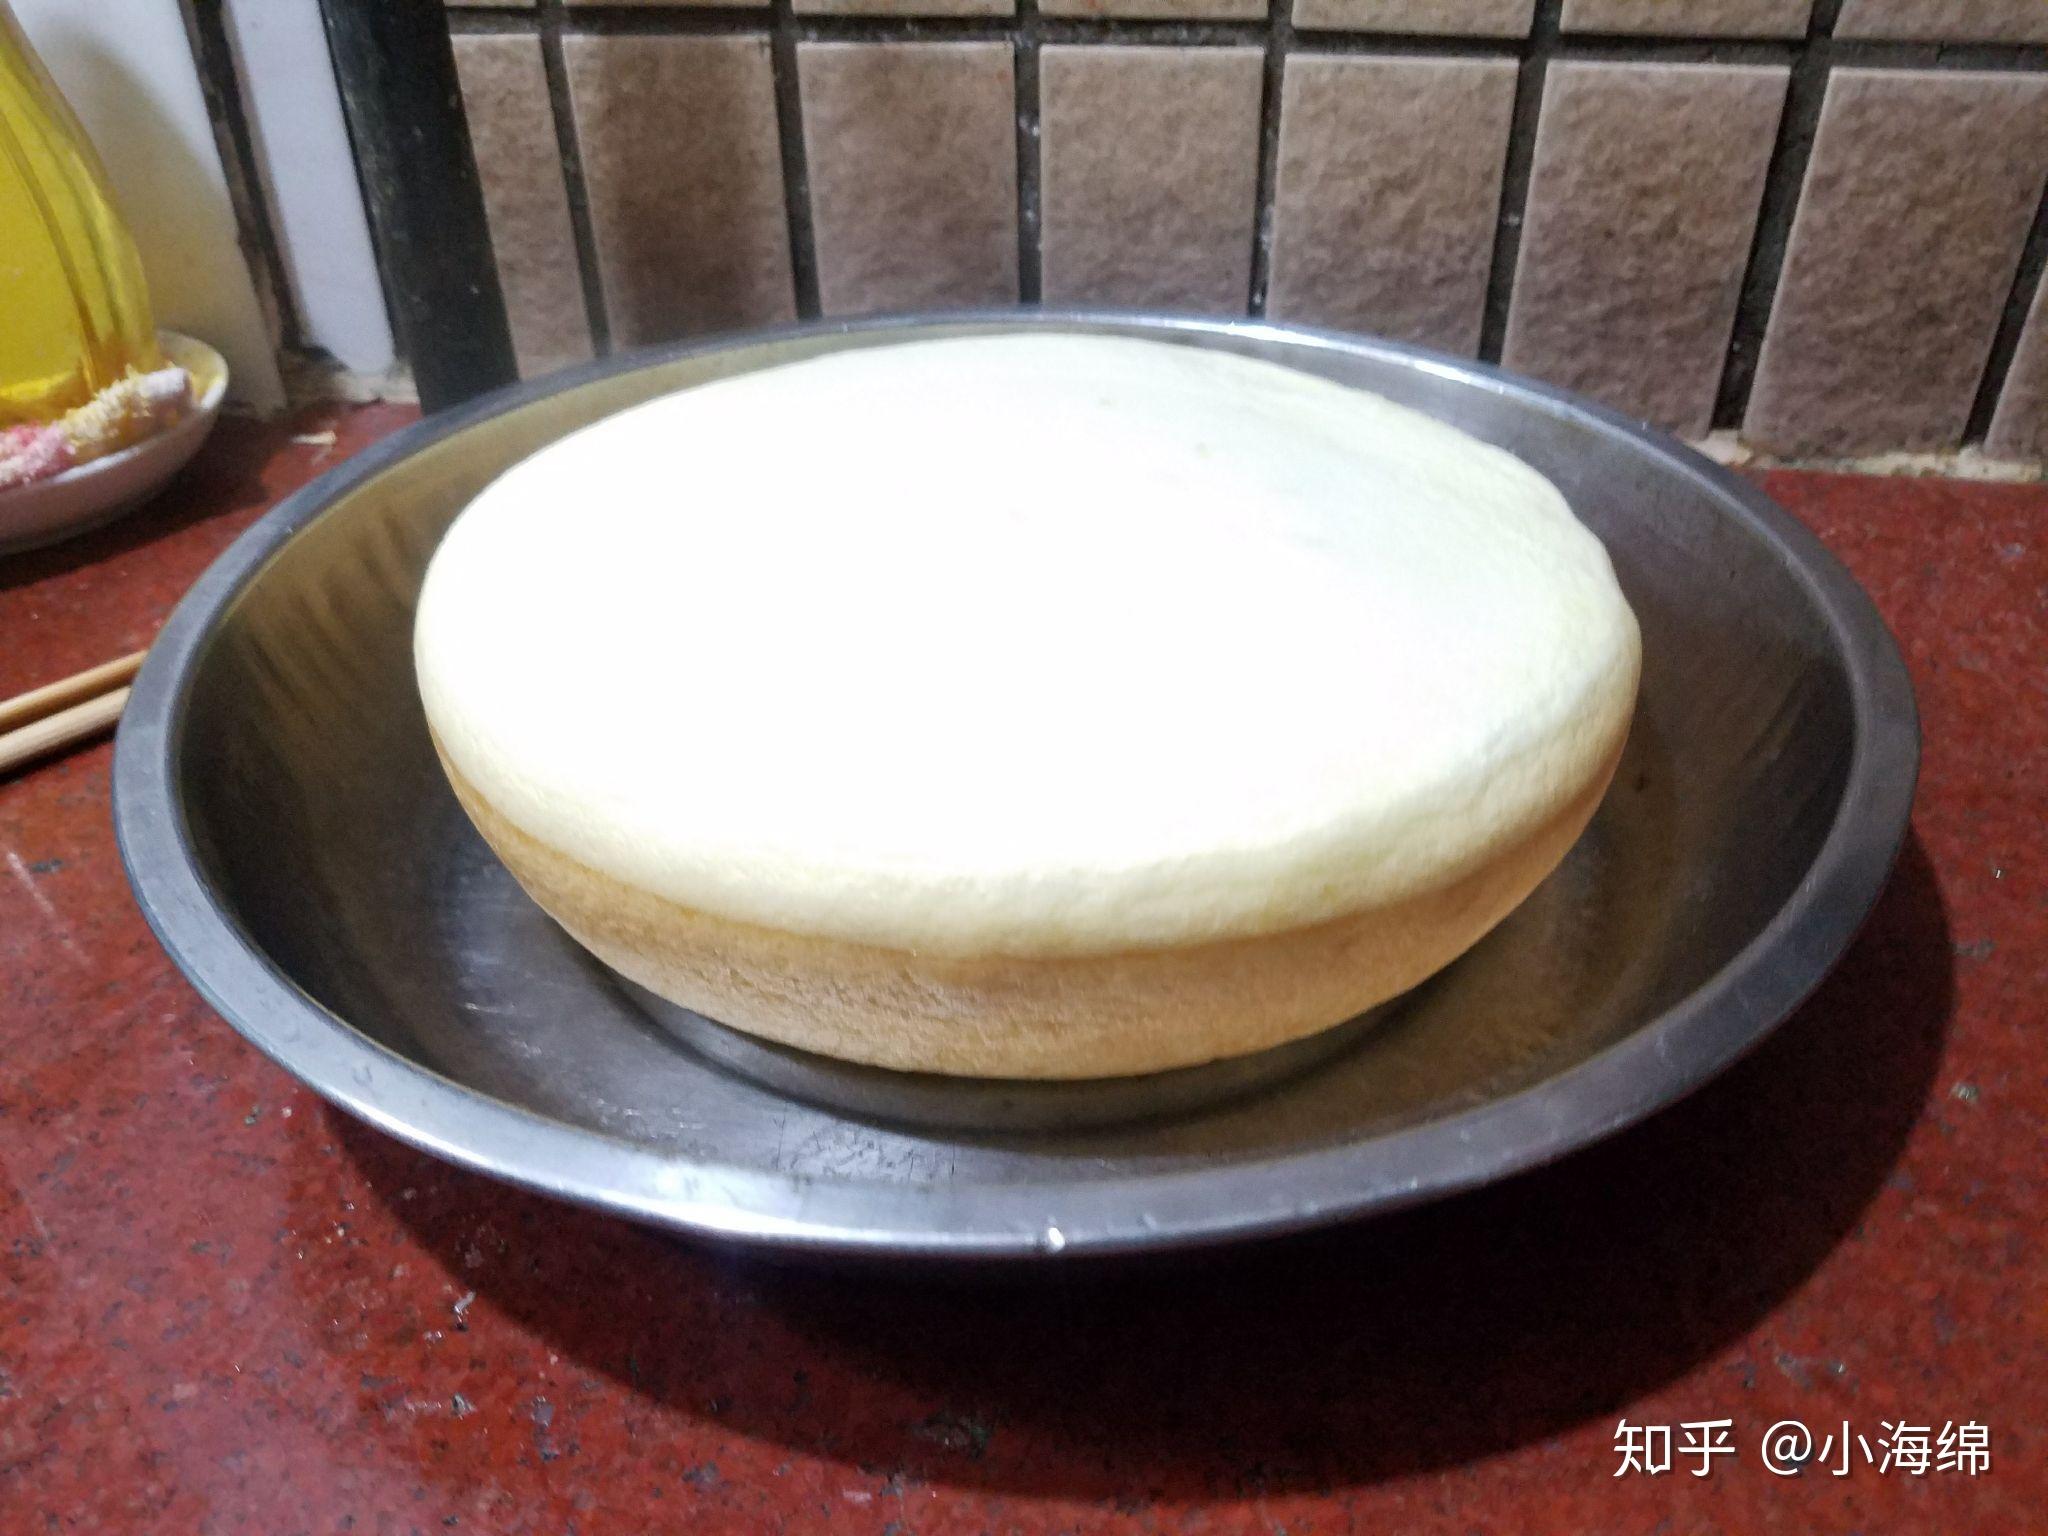 电饭锅版蛋糕（新手0失败率）的做法步骤图 - 君之博客|阳光烘站